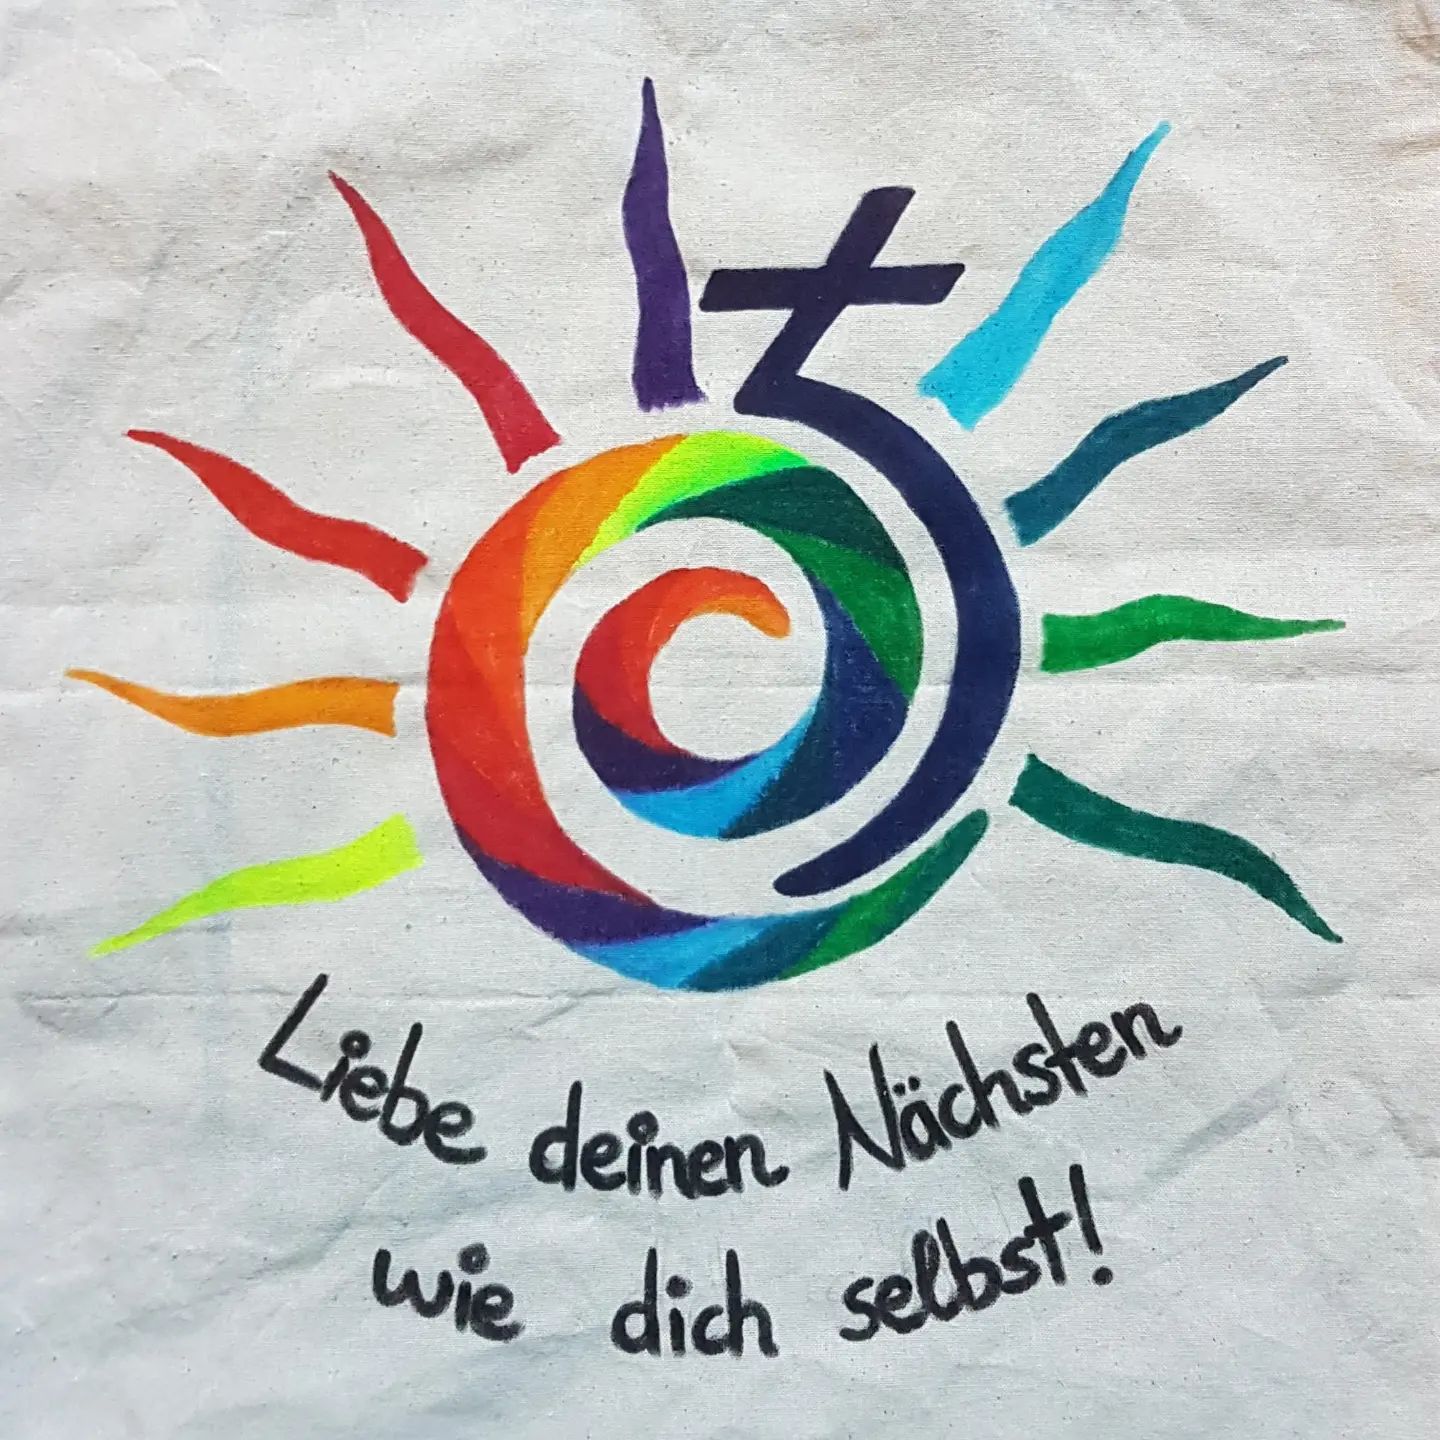 Gestern war IDAHOBIT (International Day against Homo-, Bi-, Inter- and Transphobia).
Passend dazu mal hier ein Vorschlag für ein neues Ev. Jugend Logo, was meint ihr?🙂

#idahobit #idahobit2022 #queer #evangelisch #evjugendmainz #sjpa #neueslogo #regenbogen #lgbtqia #ejhn #ekhn #verbandsarbeit